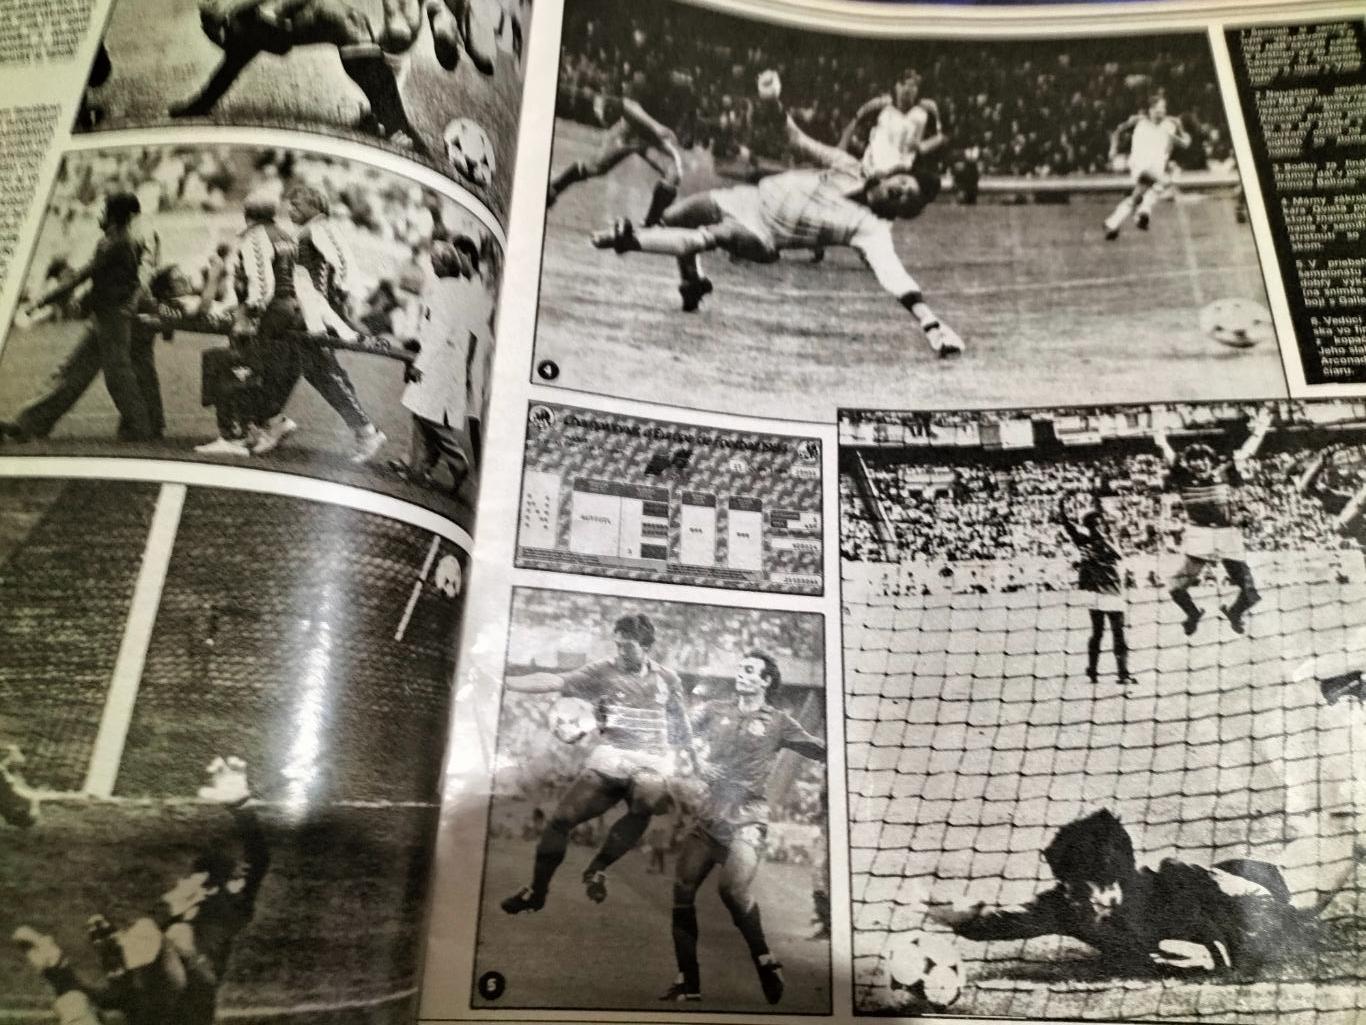 Журнал Start 1984 год(итоги Чемпионата Европы). 4